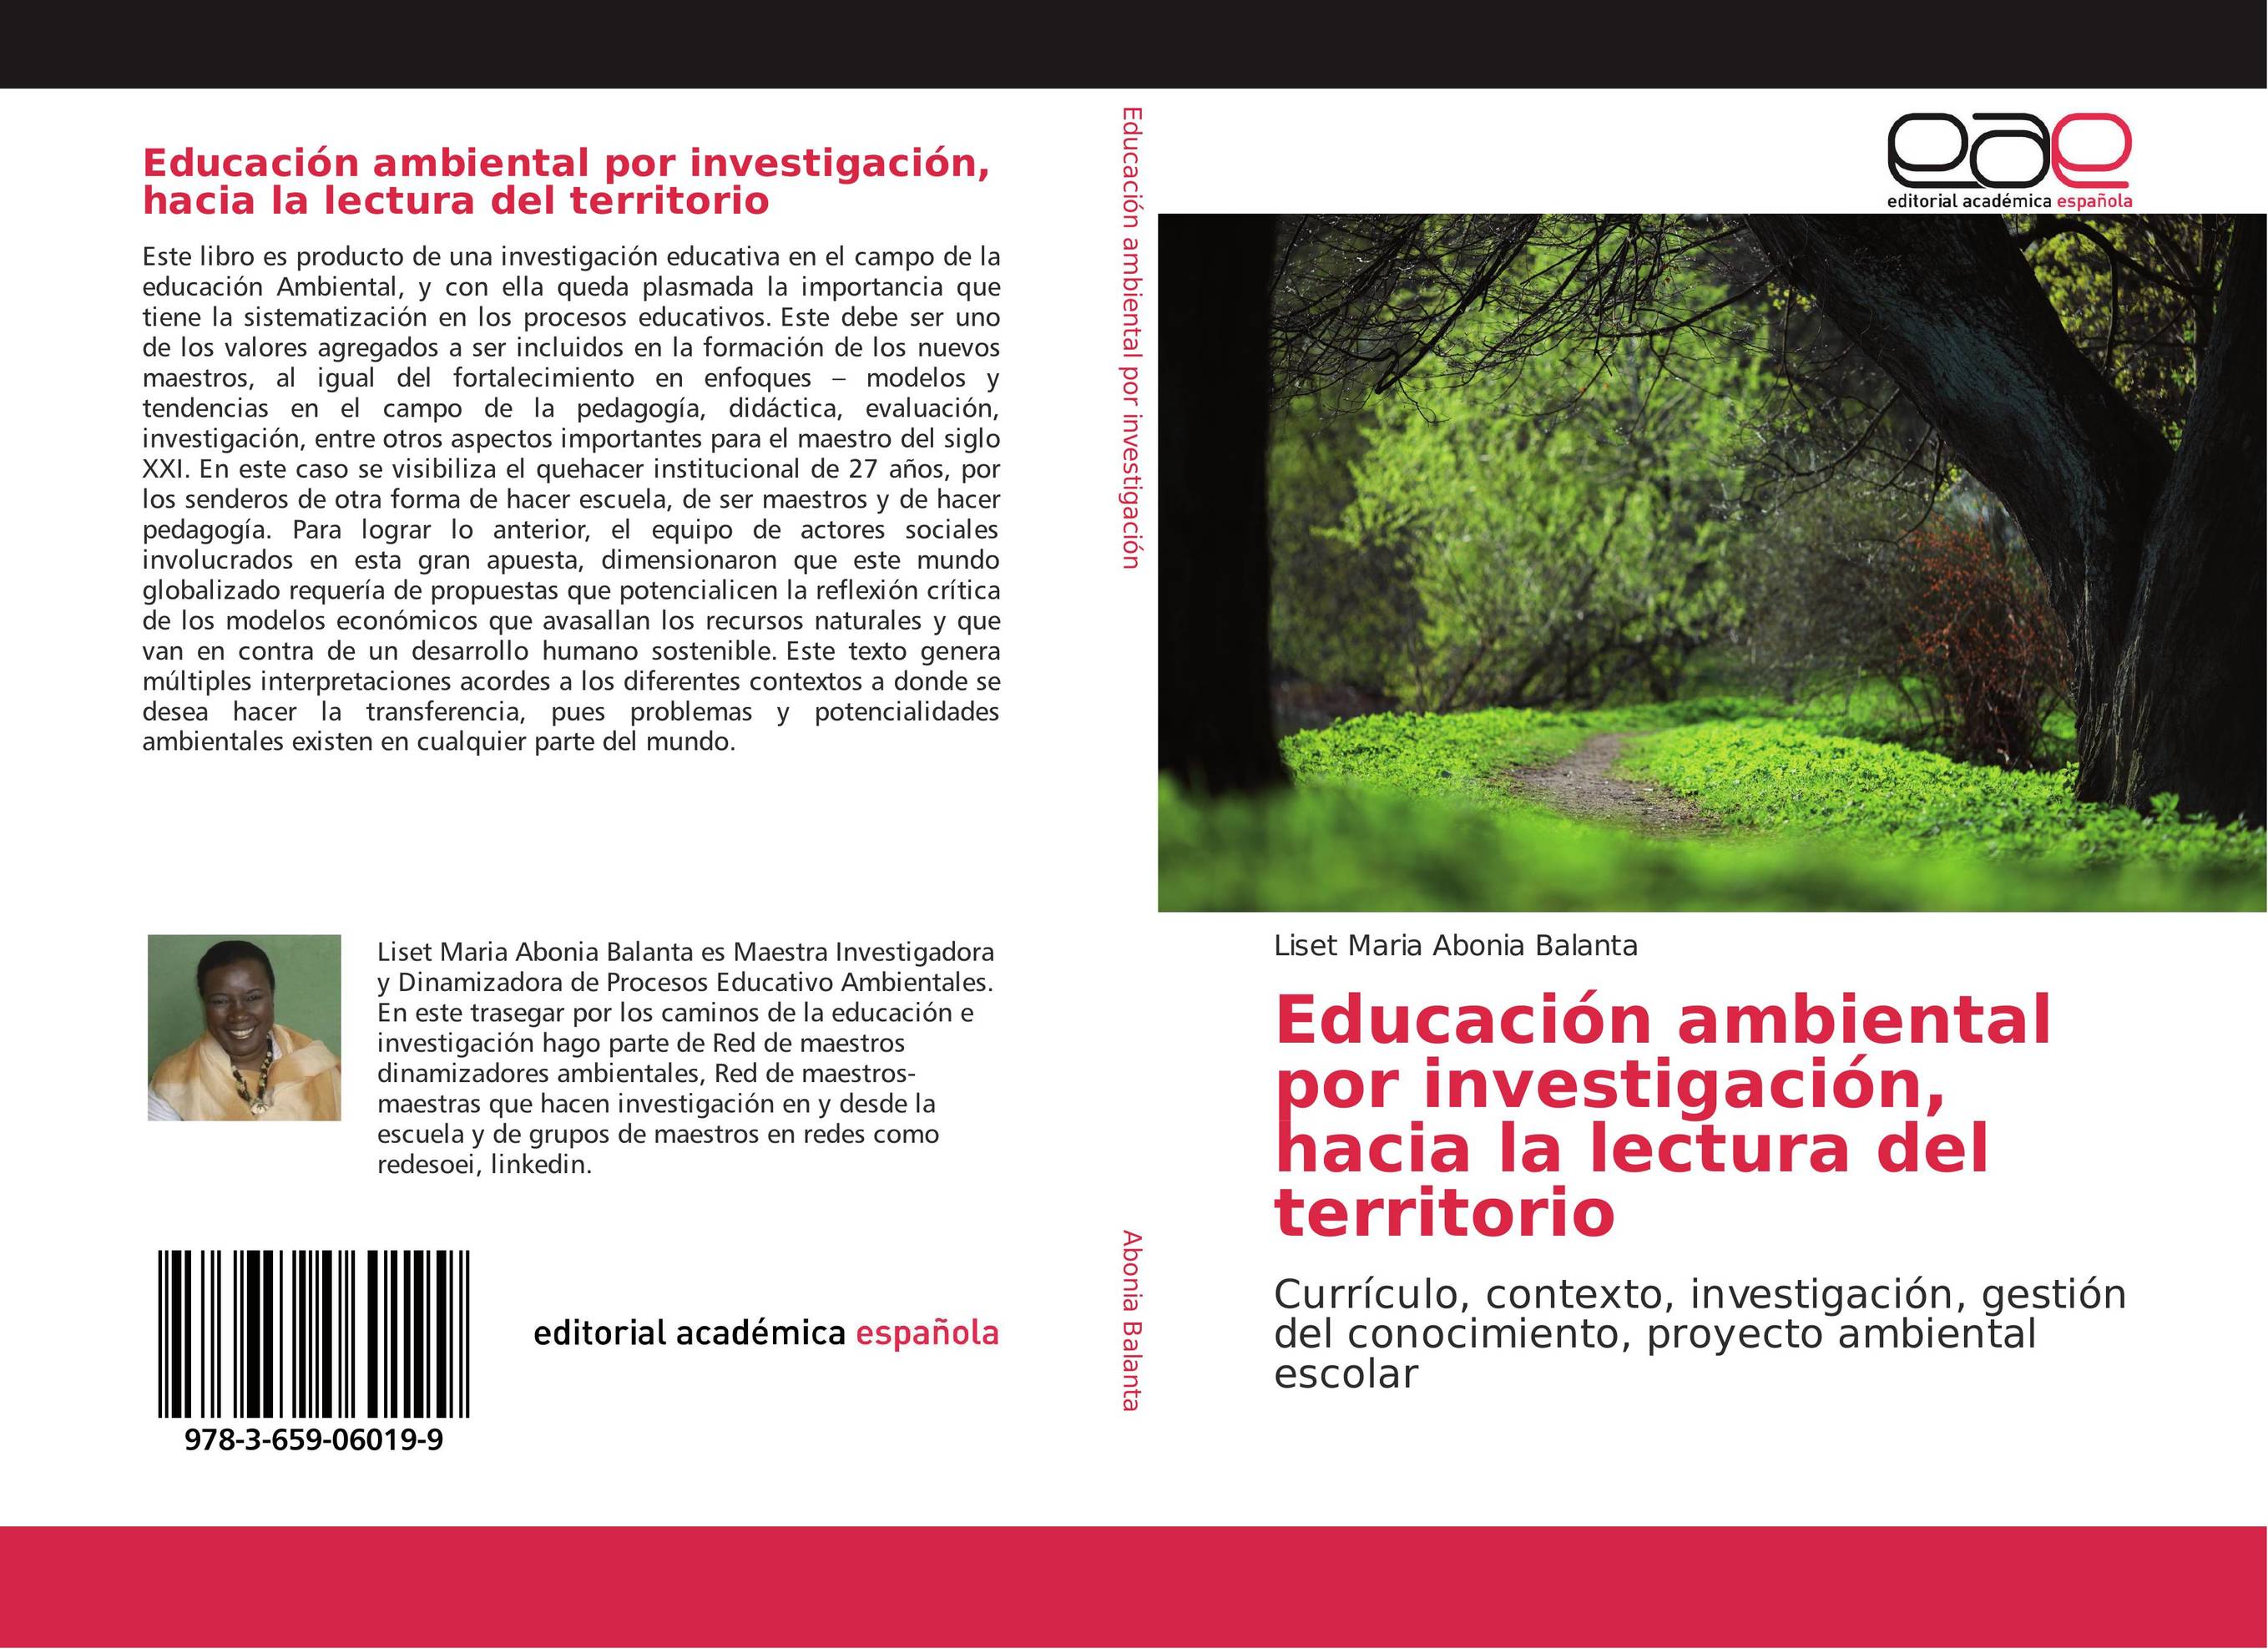 Educación ambiental por investigación, hacia la lectura del territorio